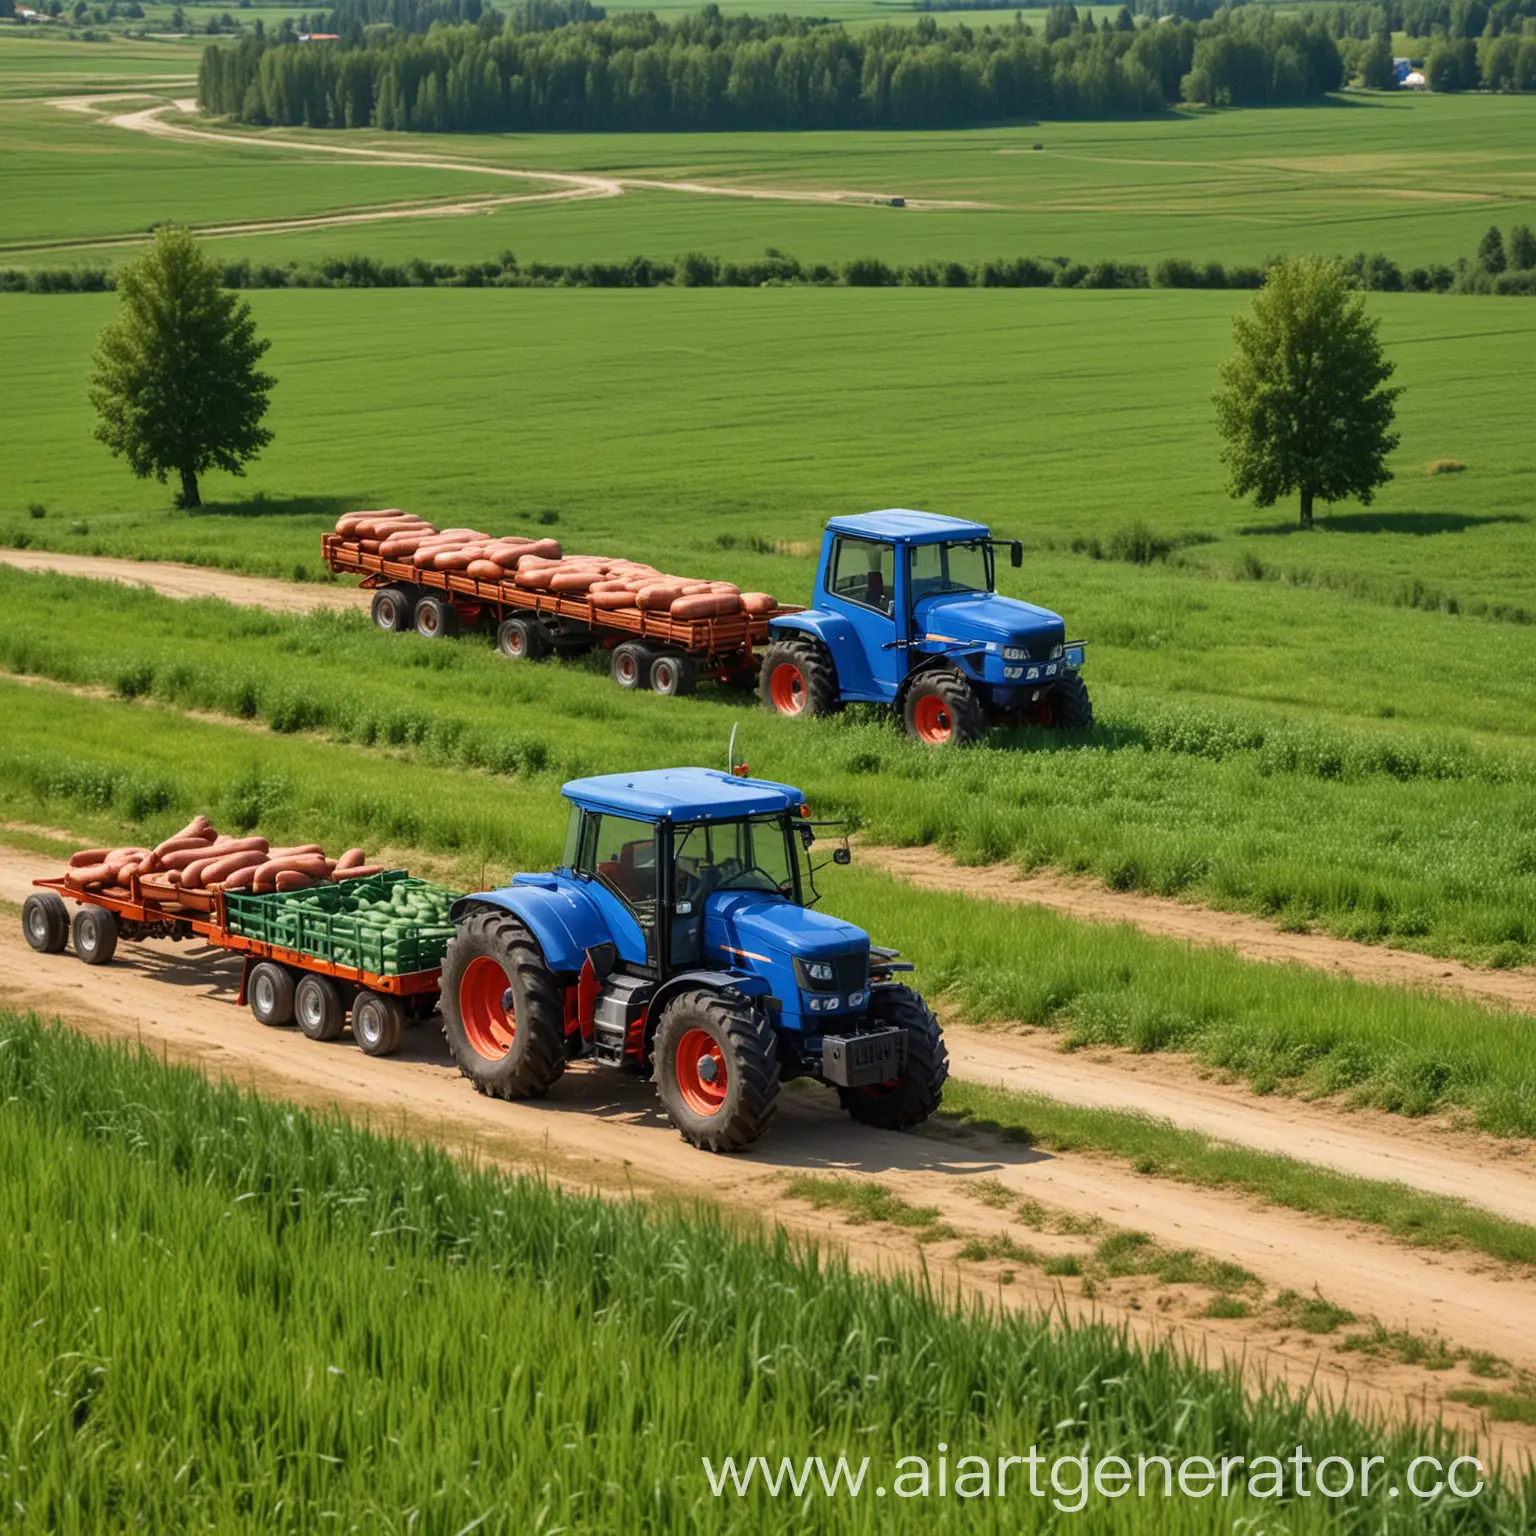 Синий трактор с прицепом едет на фоне красивого деревенского пейзажа, зеленого поля, деревьев, трактор везет гигантскую колбасу в прицепе, высота изображения 10 сантиметров, длина изображения 10 сантиметров.  